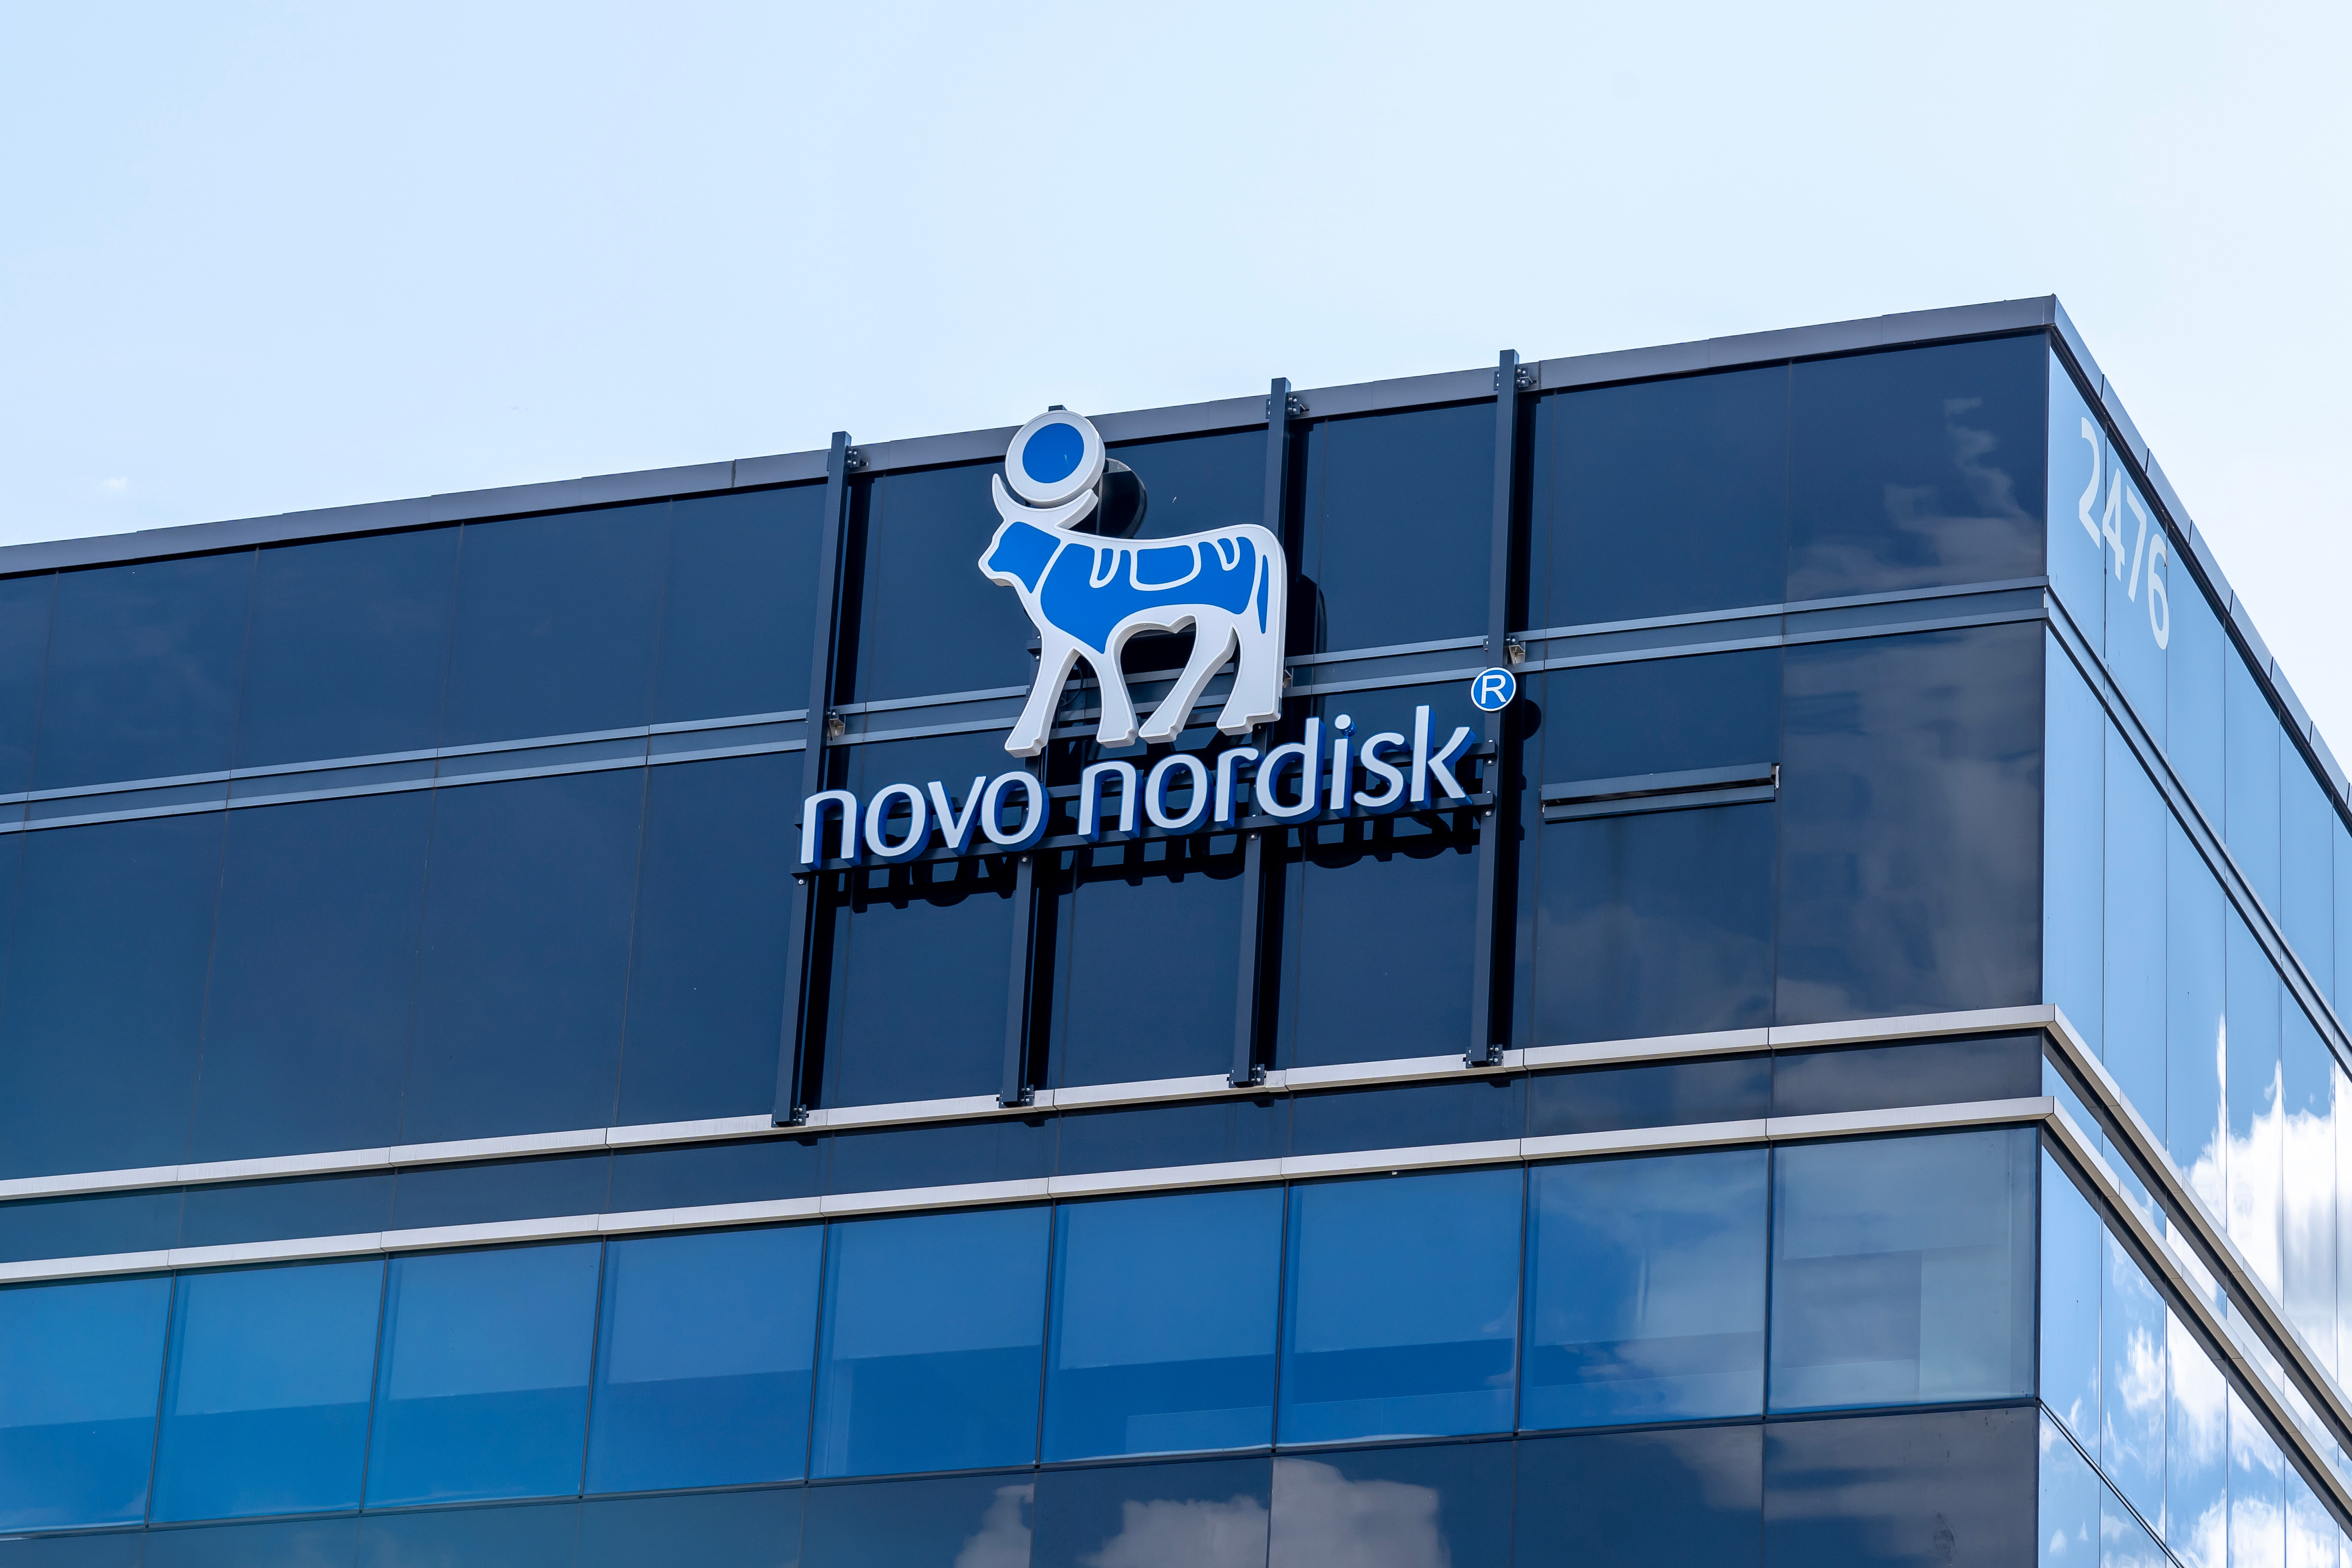 Waardering Novo Nordisk stevig opgelopen door verkoopsucces nieuwe medicijnen